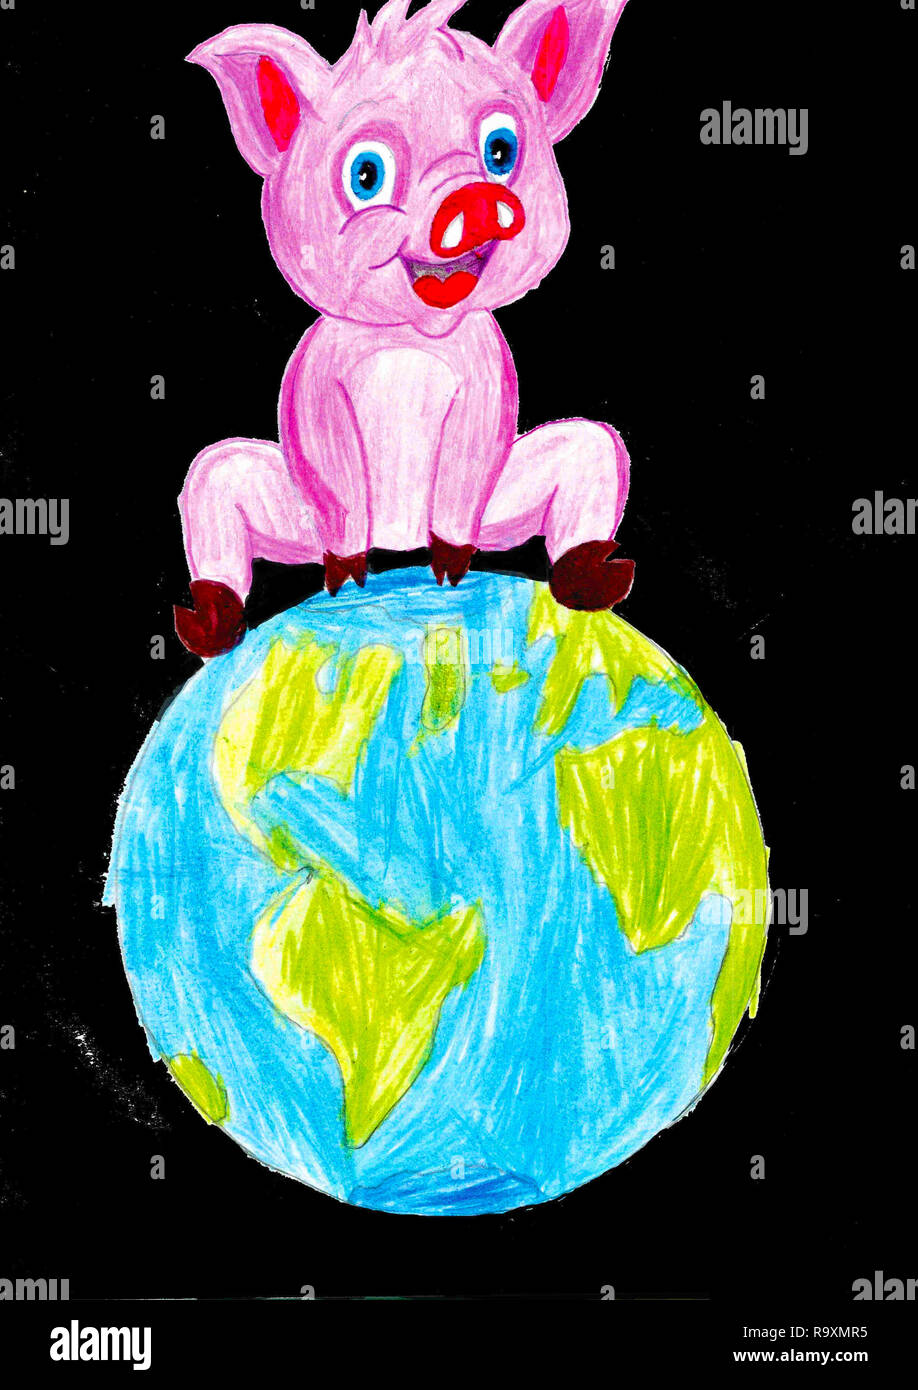 Big Pink pig assis sur la terre, fond noir, dessin de l'enfant Banque D'Images